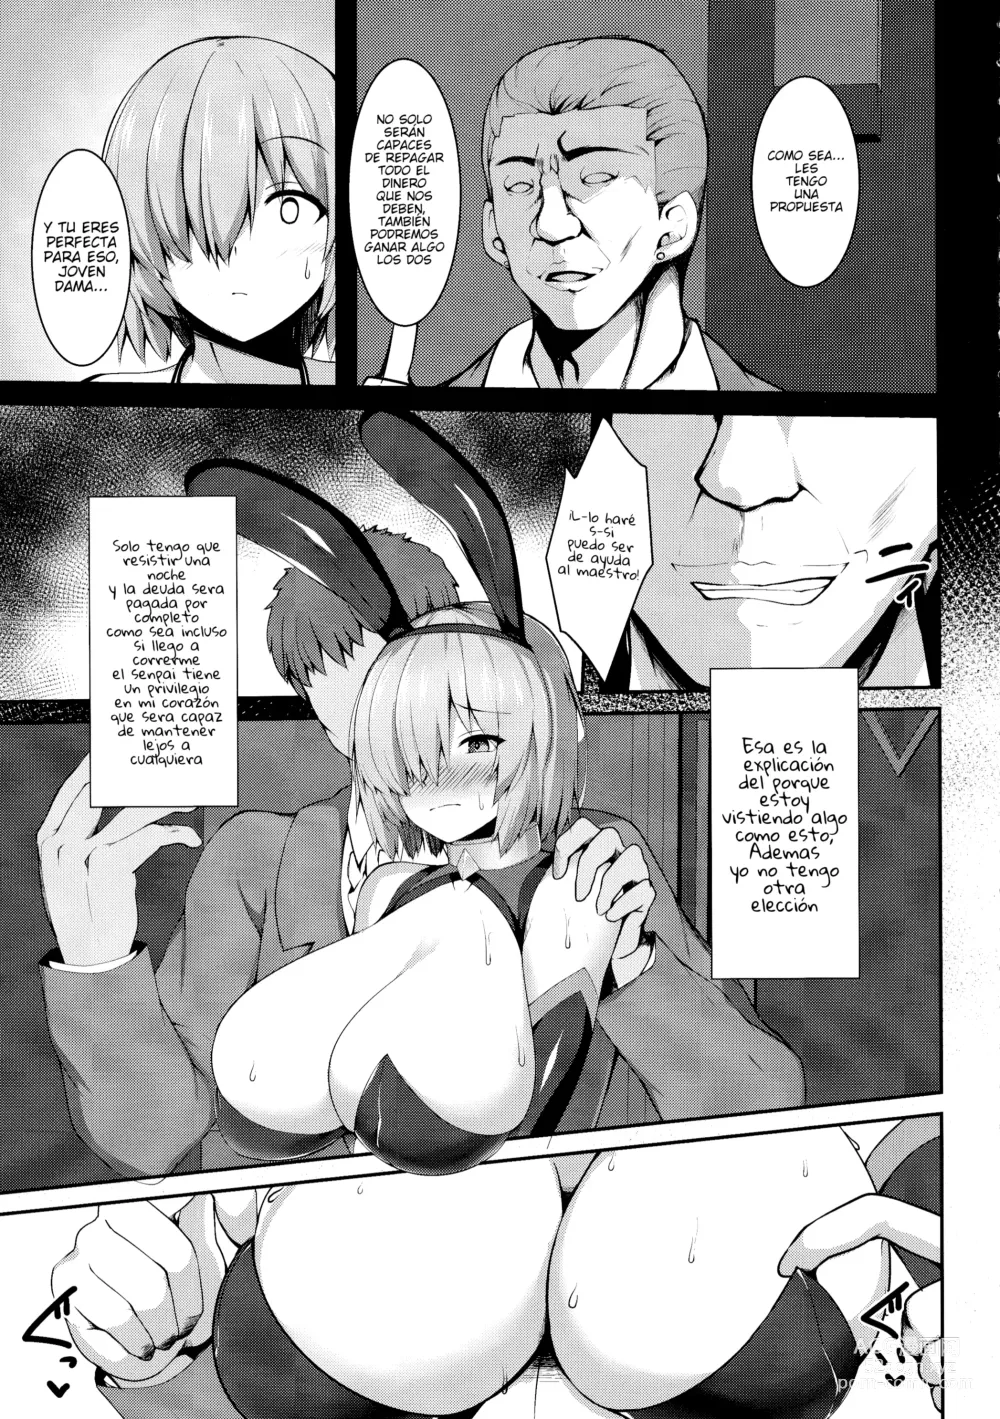 Page 4 of doujinshi Sexo en el casino con mash para pagar su deuda